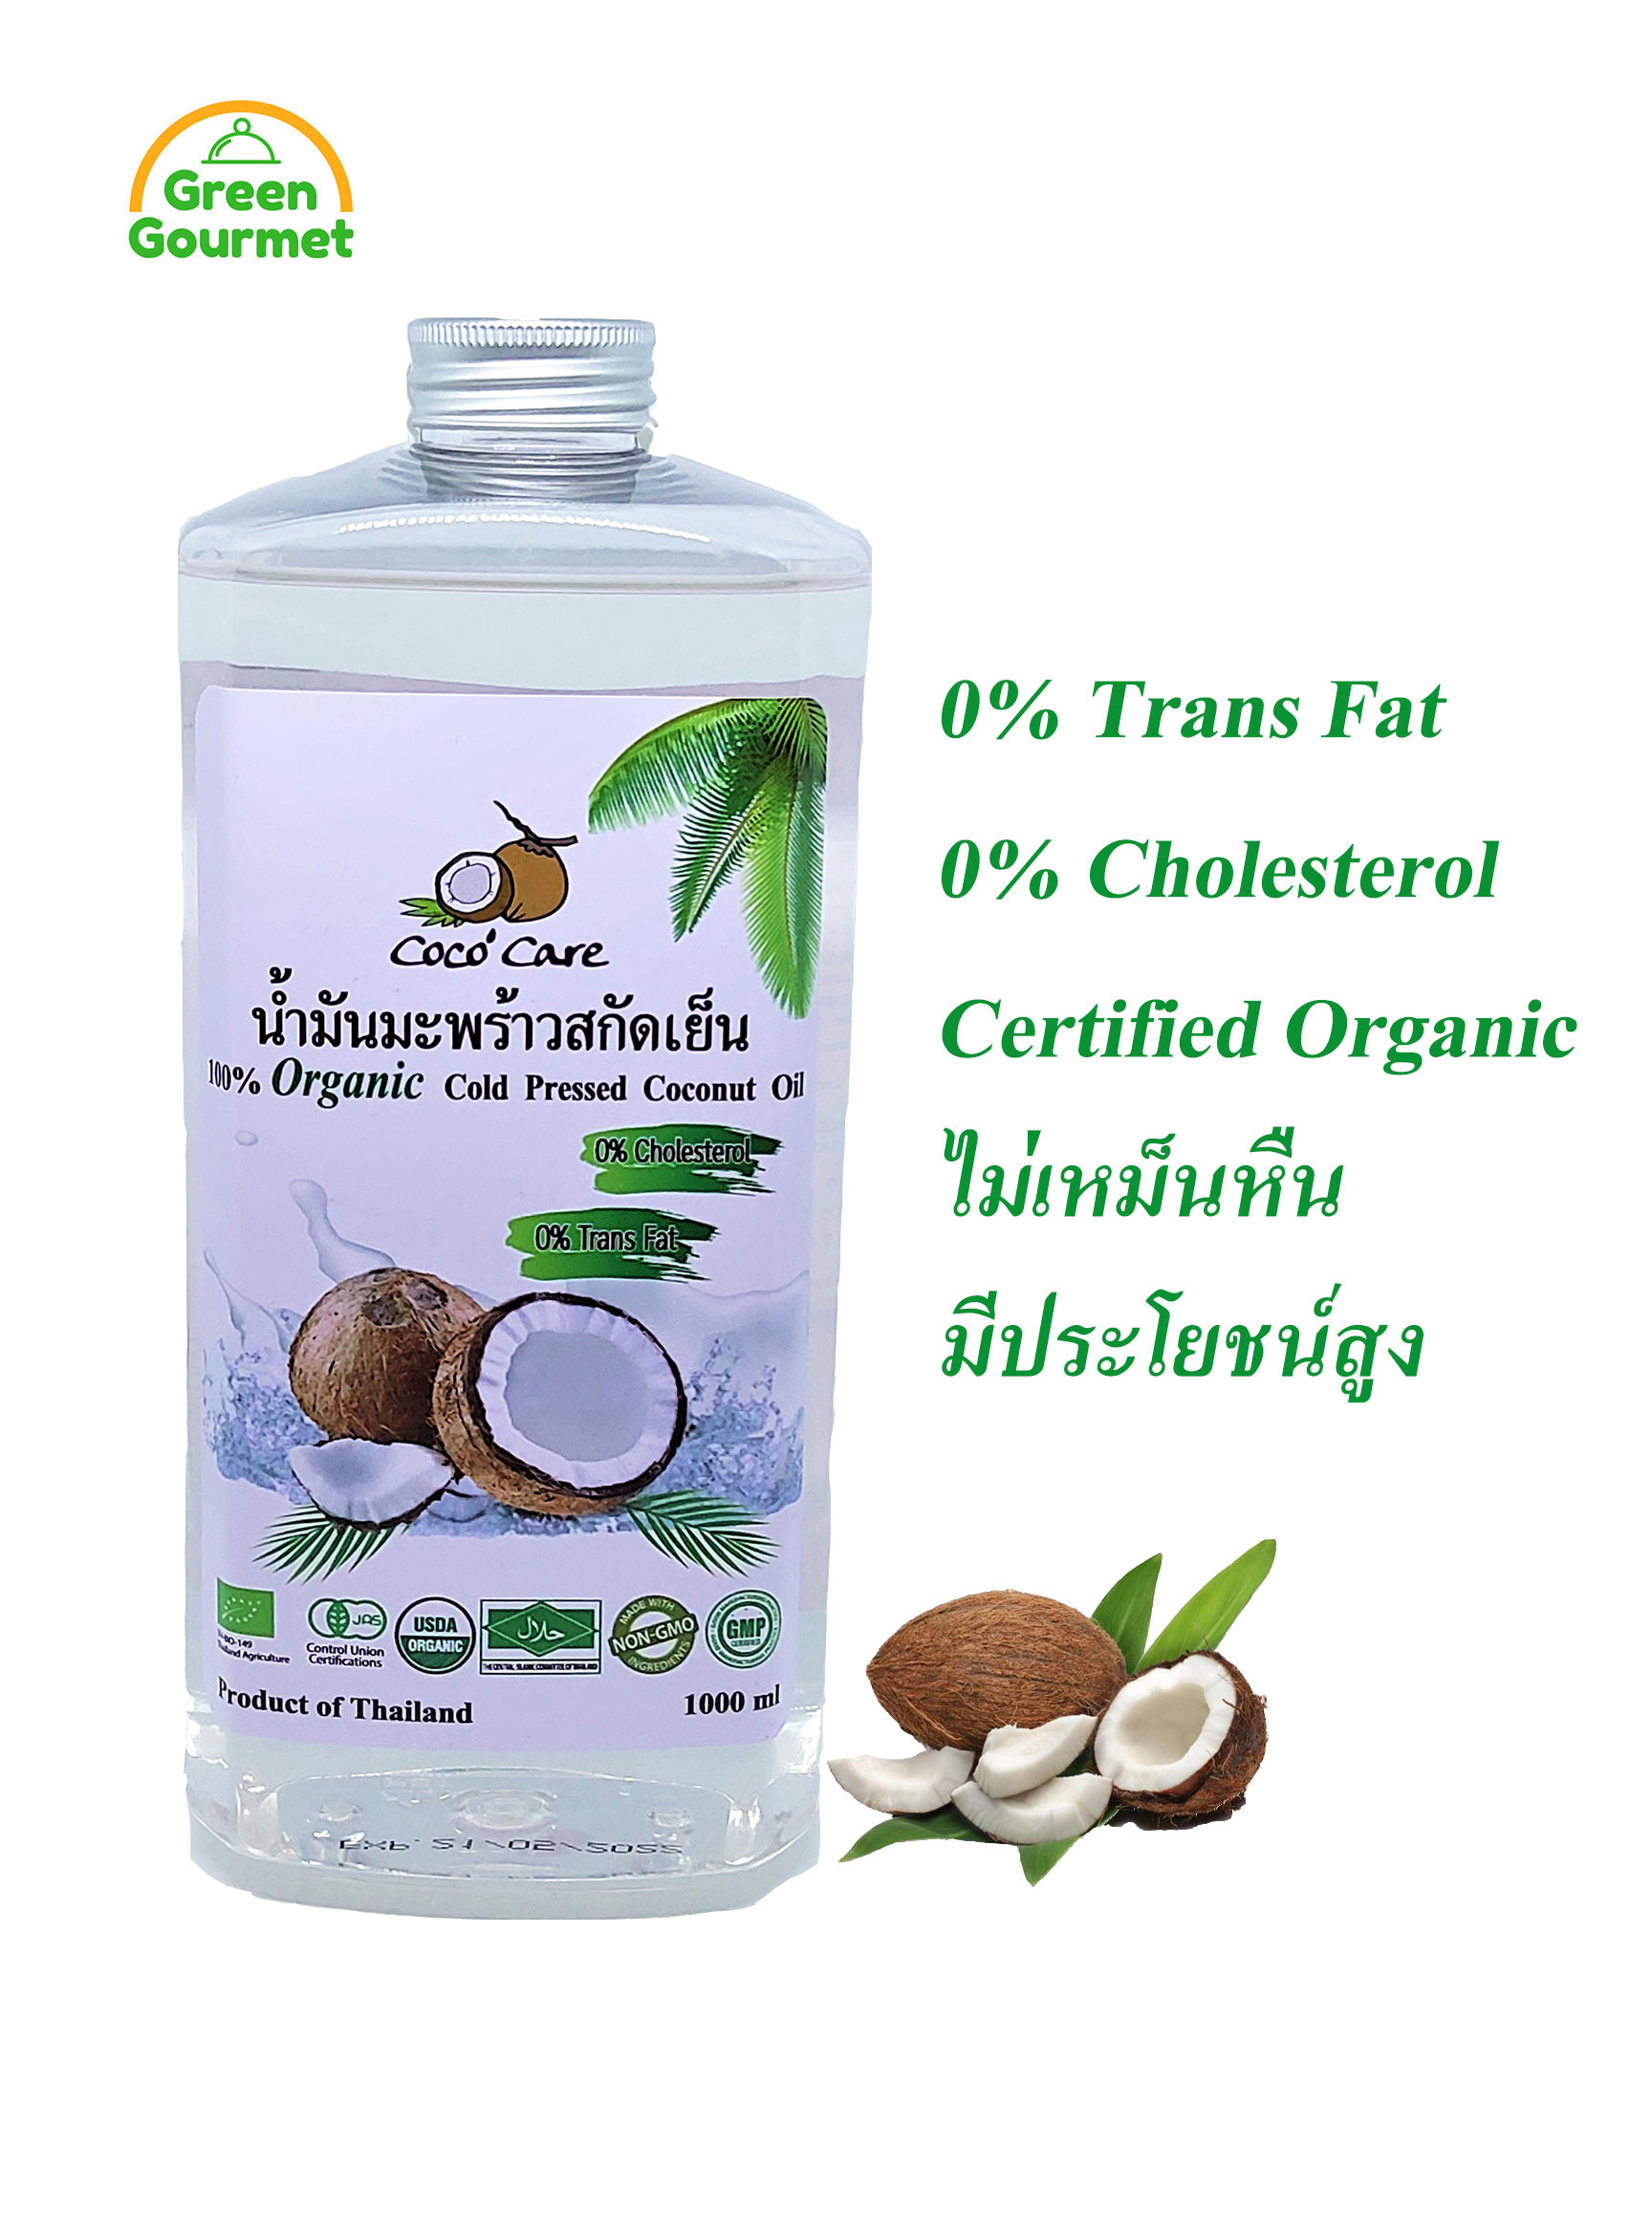 ราคา Coco'Care น้ำมันมะพร้าวสกัดเย็น ออร์แกนิค 100% ขนาด 1000 มล.(Organic Cold Pressed Coconut Oil 1000 ml) น้ำมันมะพร้าวสกัดเย็นแท้ จากสวนเกษตรอินทรีย์ ไร้สารปรุงแต่ง